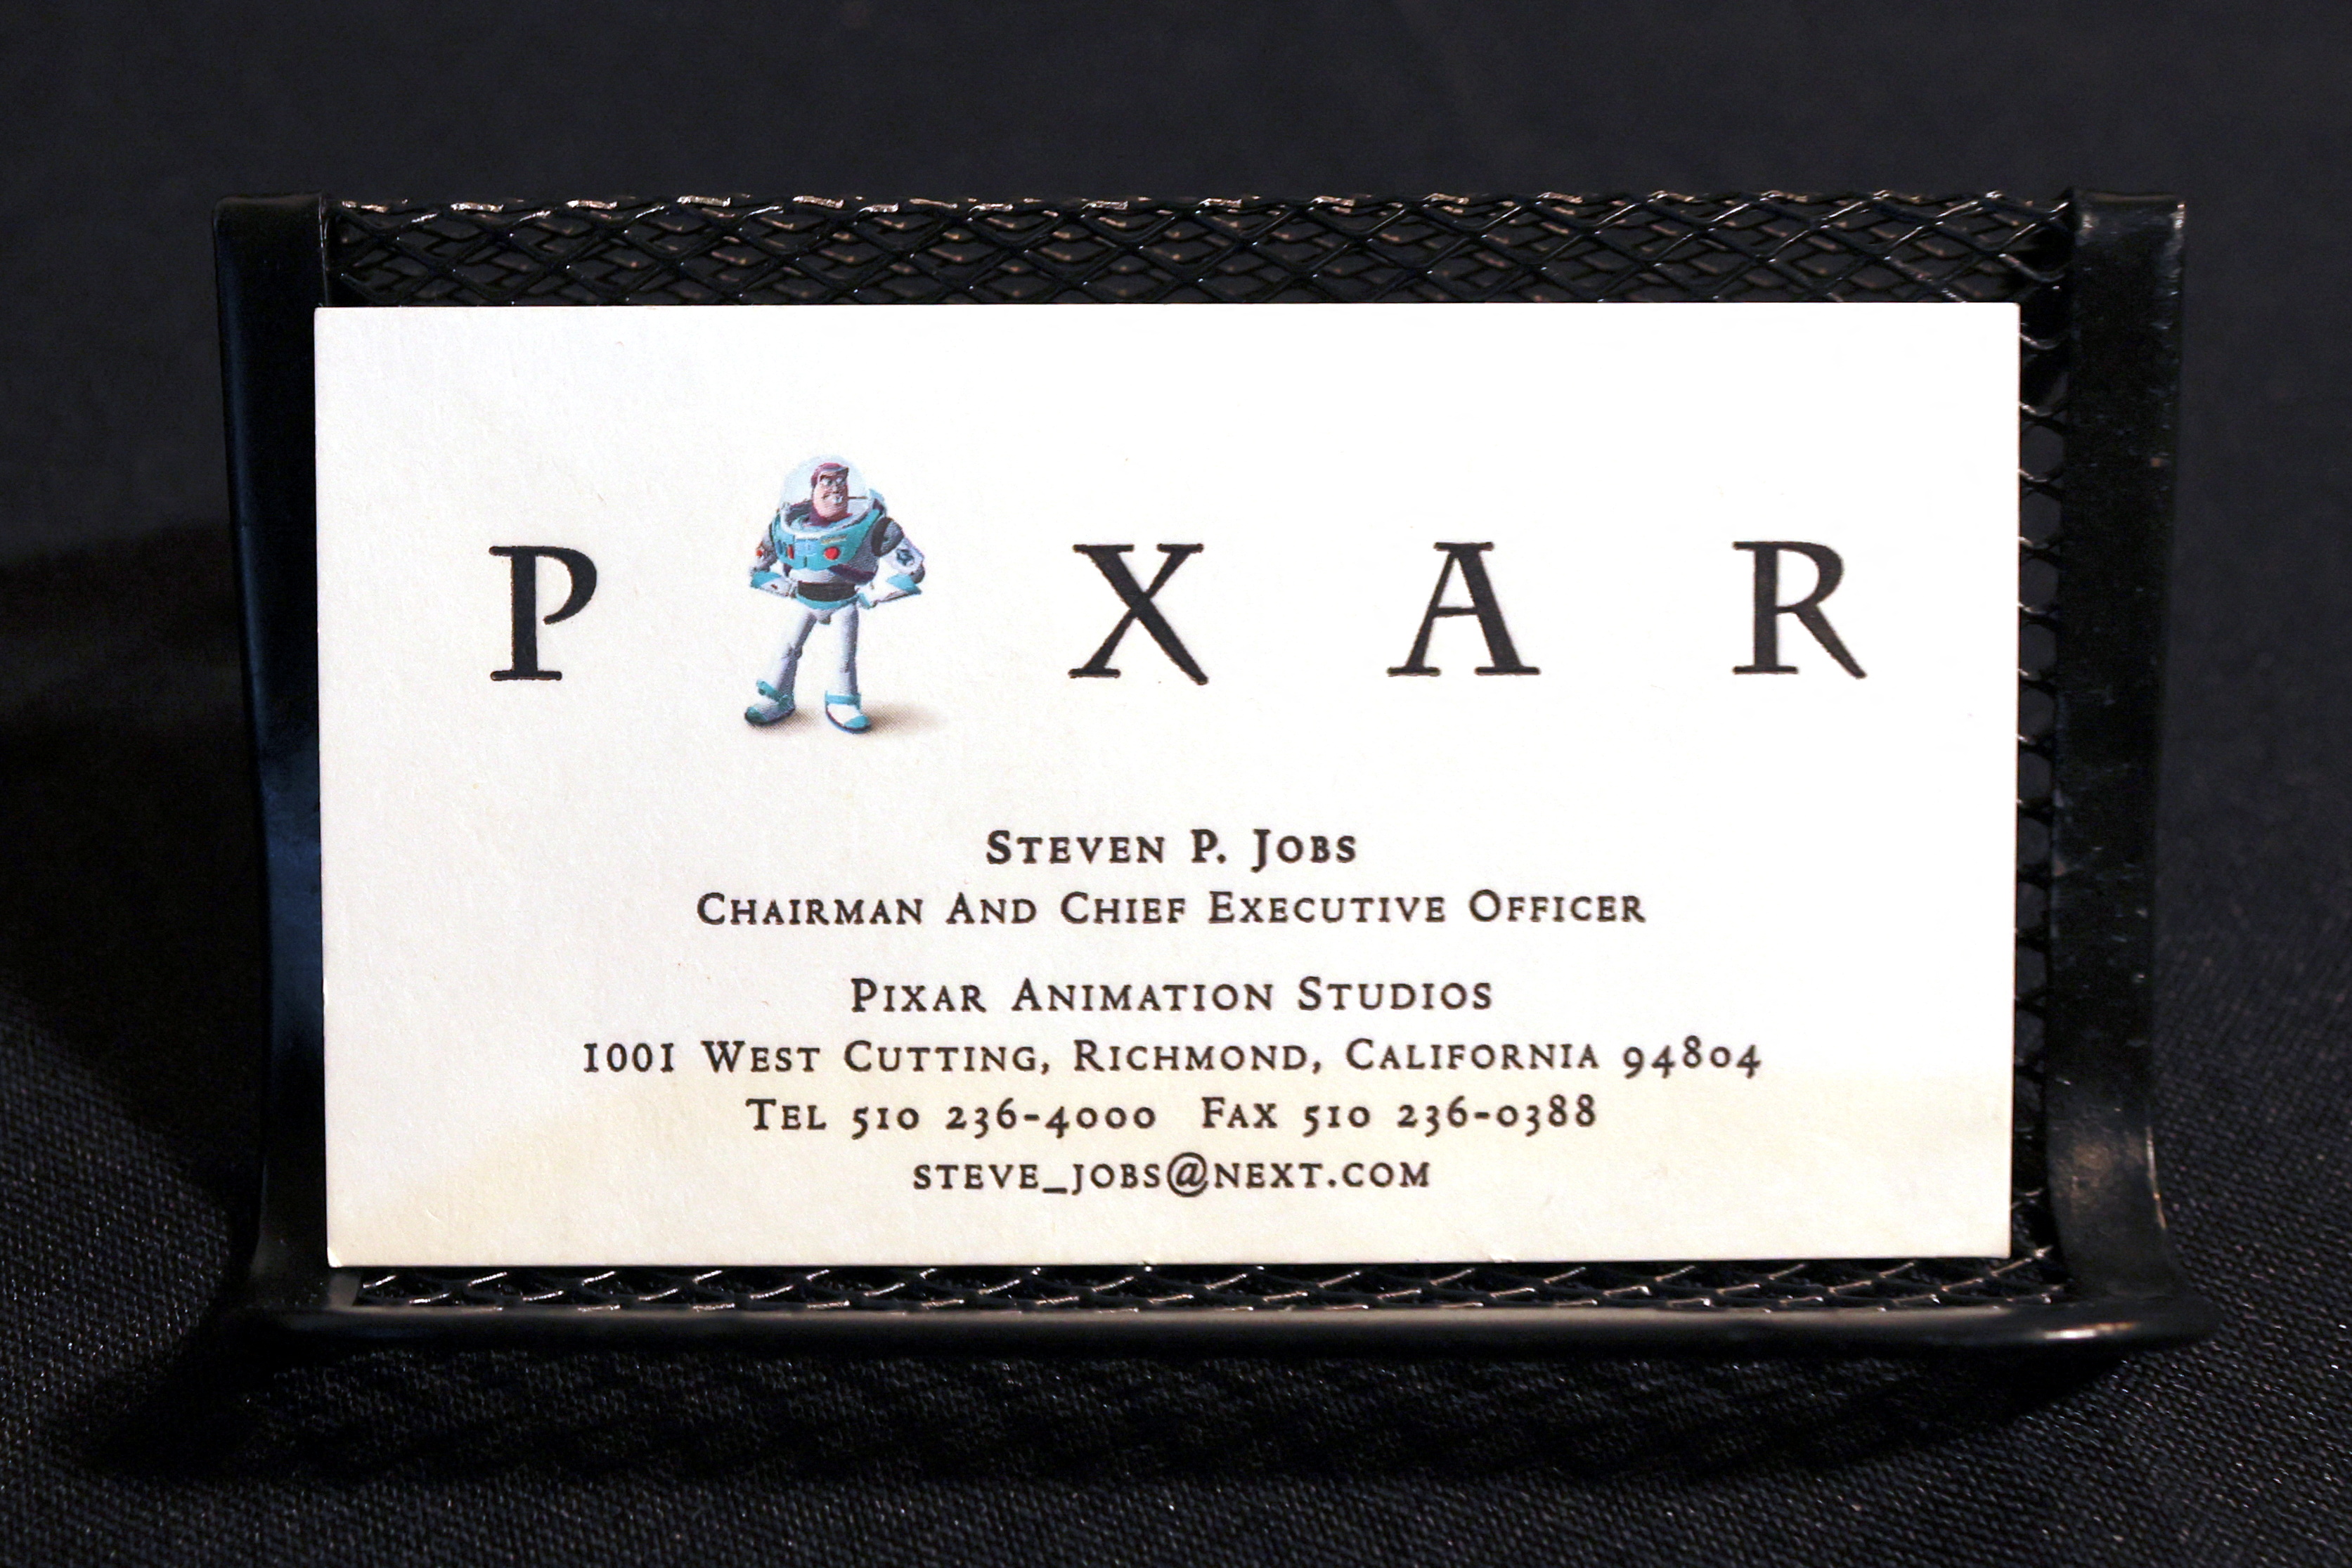 Tarjeta de presentación de Steve Jobs con el logo de Pixar, compañía que fue adquirida por Disney años después de su creación. REUTERS/Mike Segar